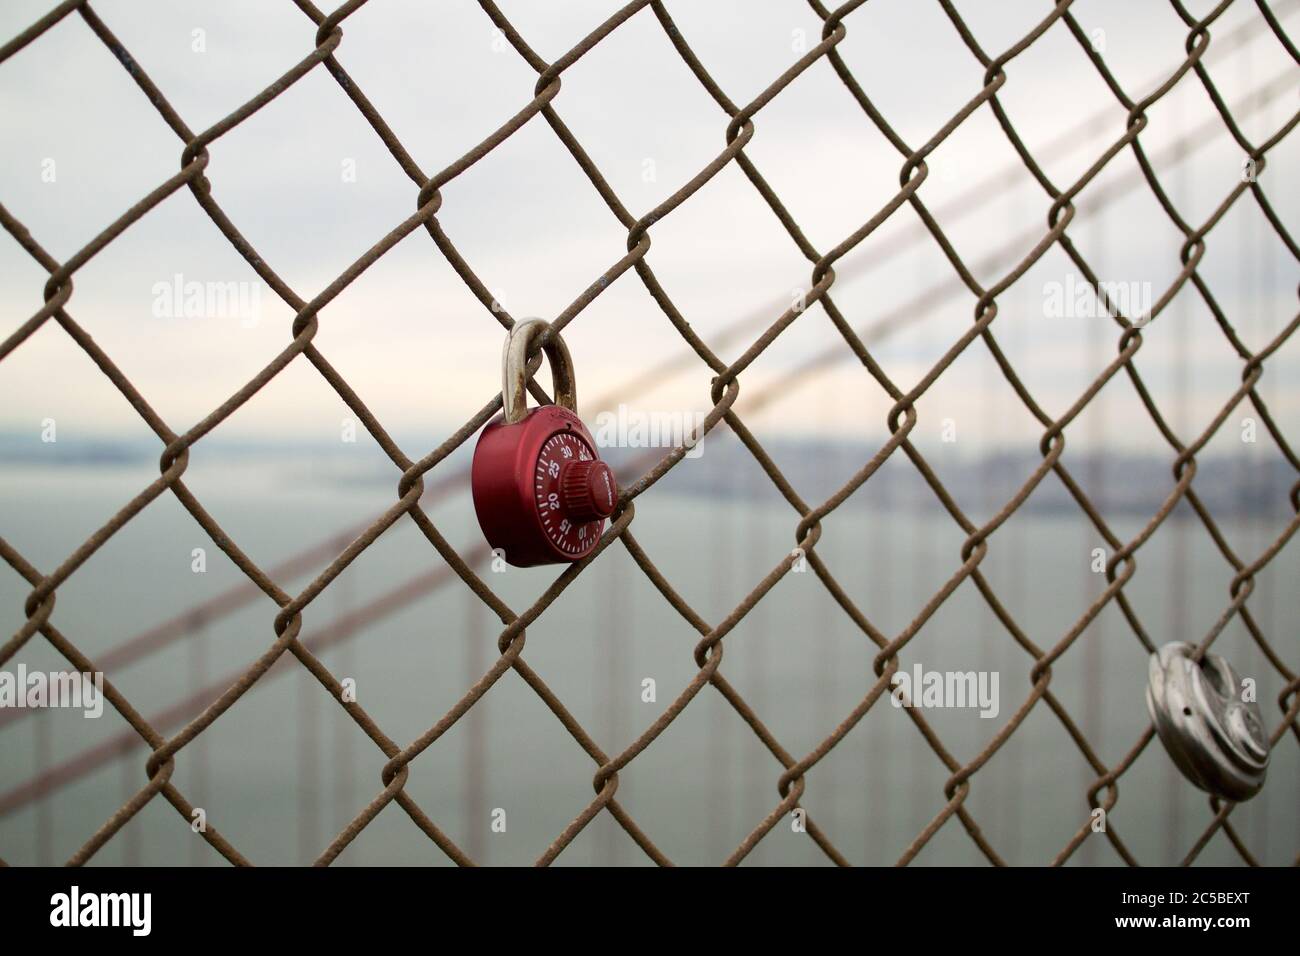 Locks d'amour sur le Golden Gate Bridge, un cadenas rouge combiné, un cadenas rond. Horizon de San Francisco en arrière-plan. Ciel gris. Banque D'Images